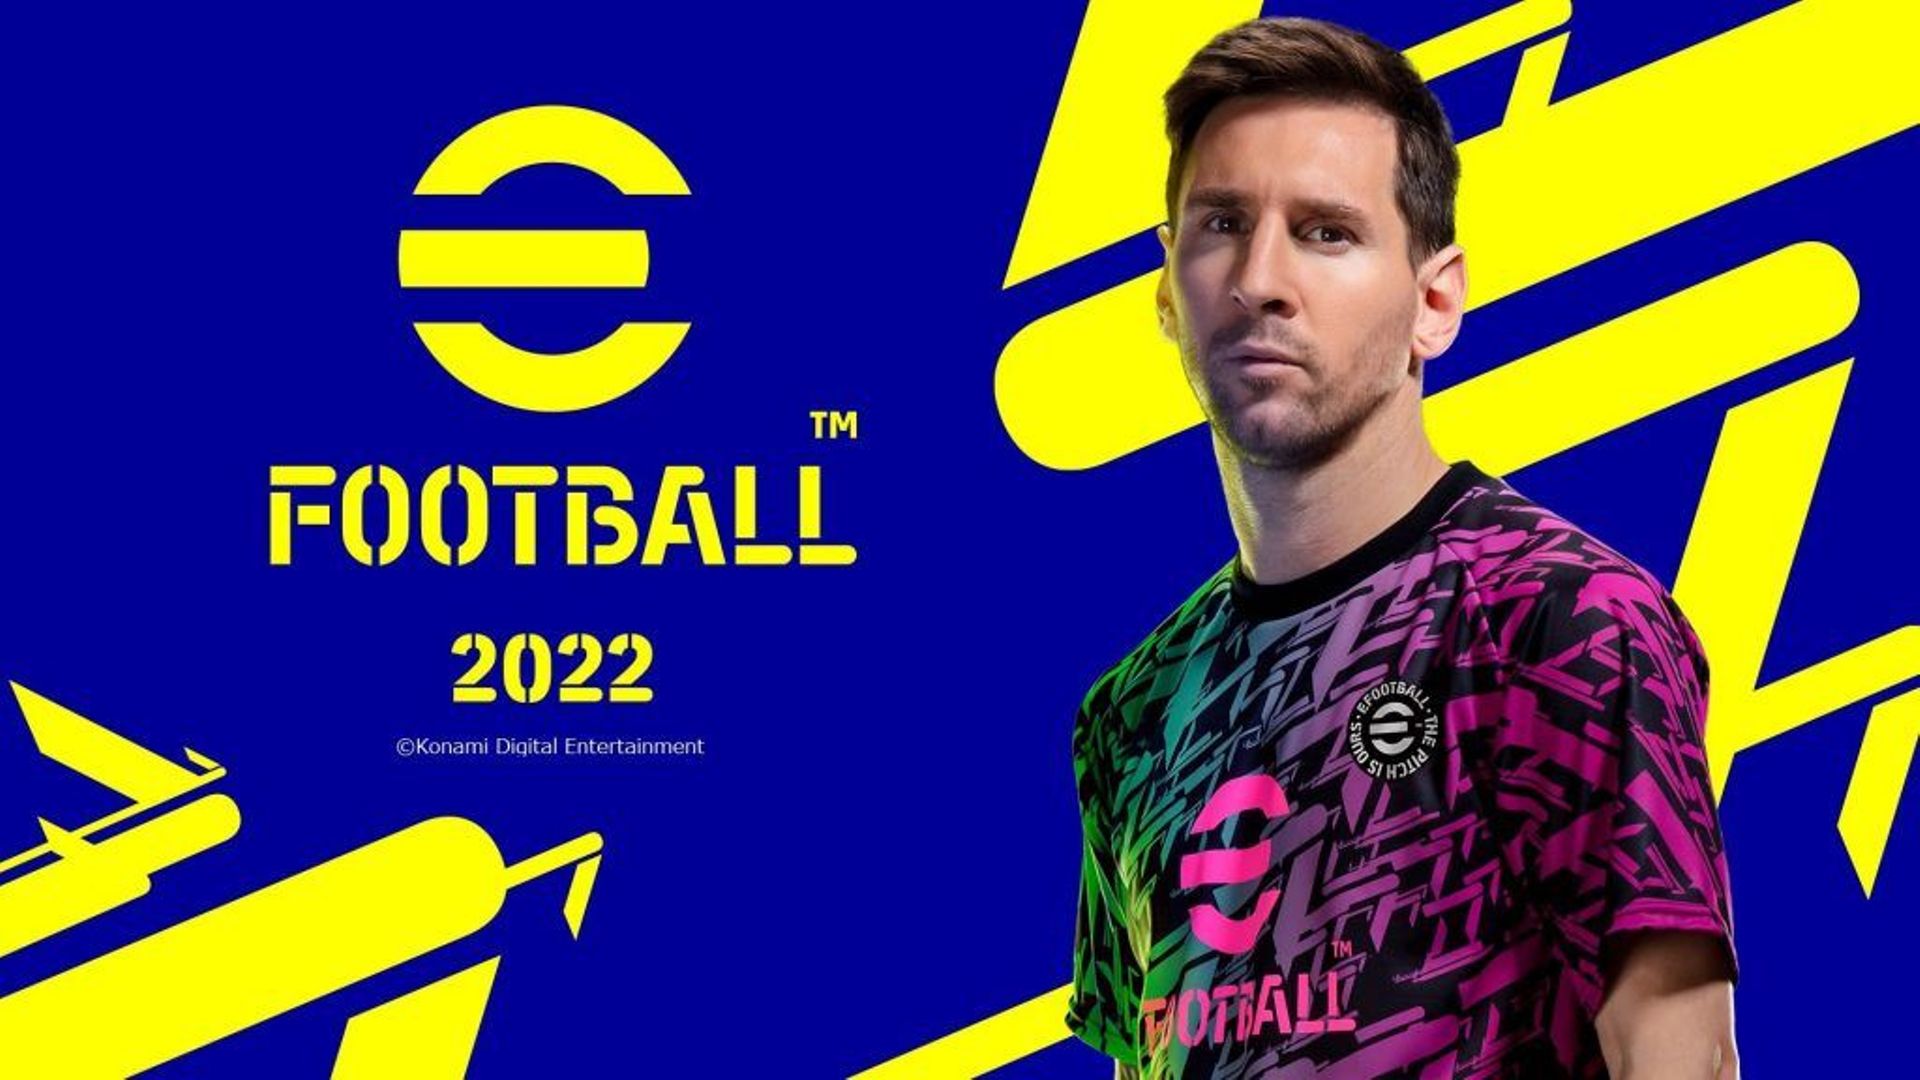 eFootball 2022 : sur Twitter, les joueurs se moquent et critiquent le nouveau PES